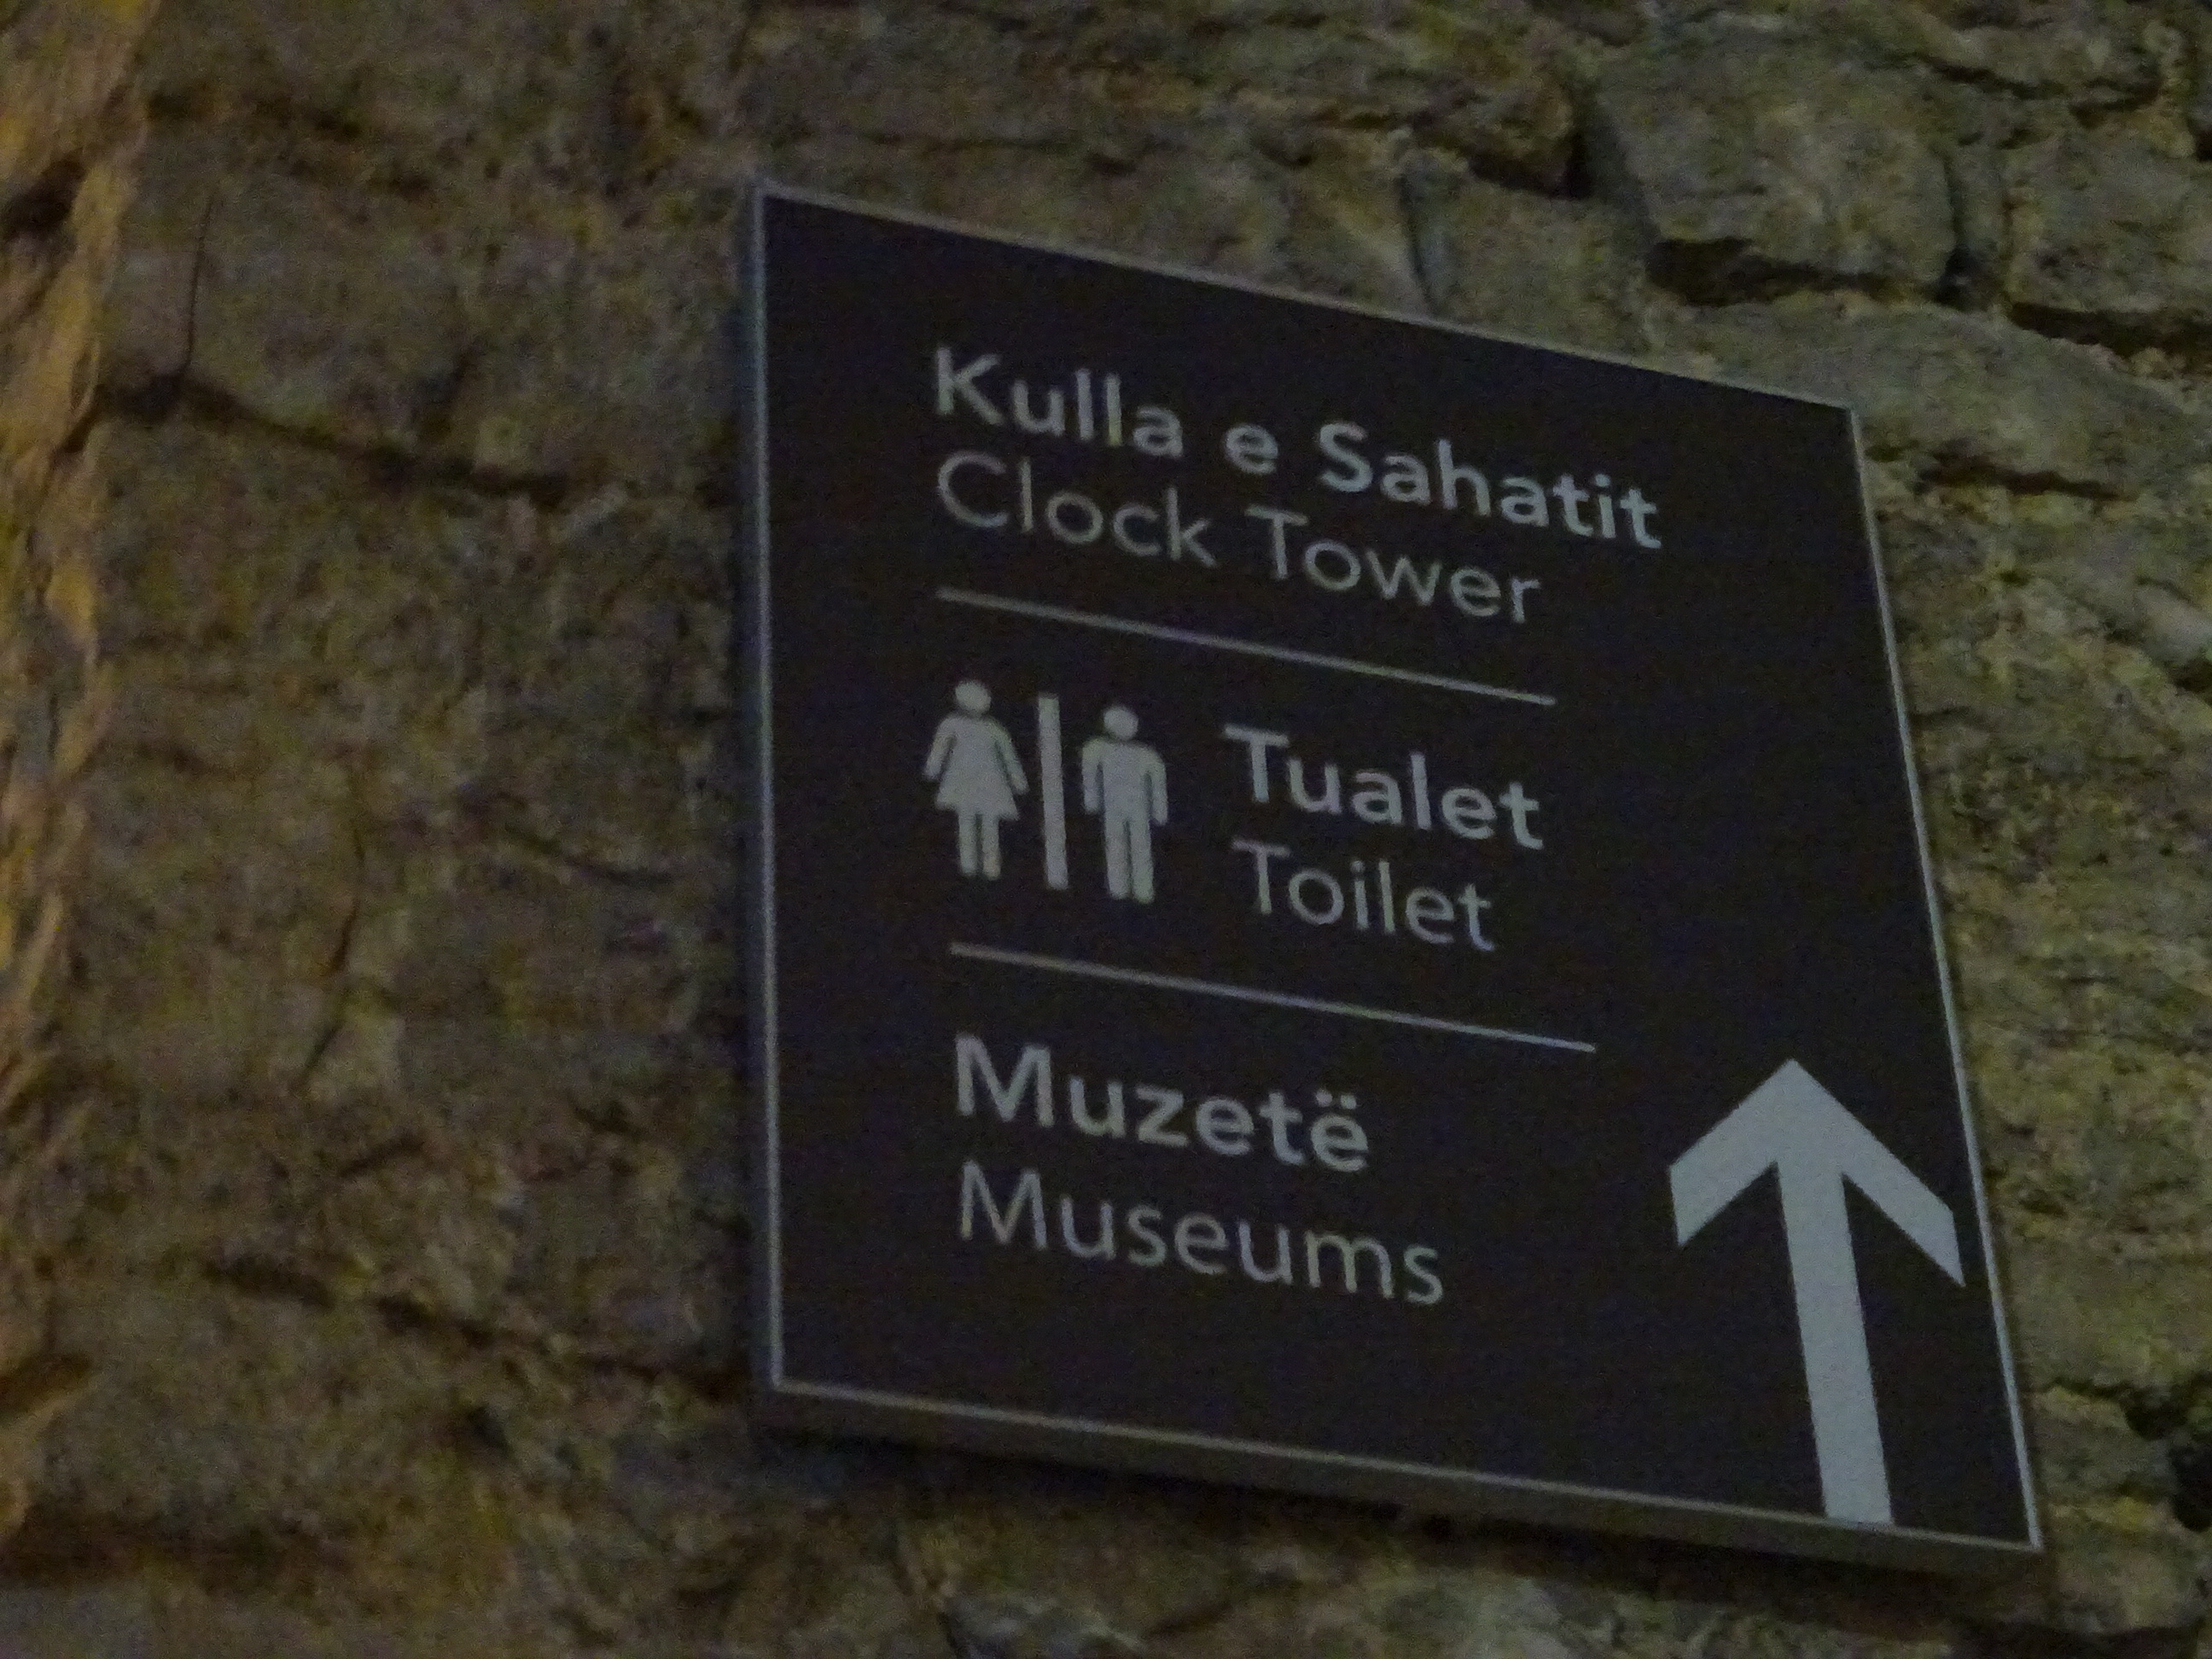 ジロカストラ城の中のトイレの場所をさす看板